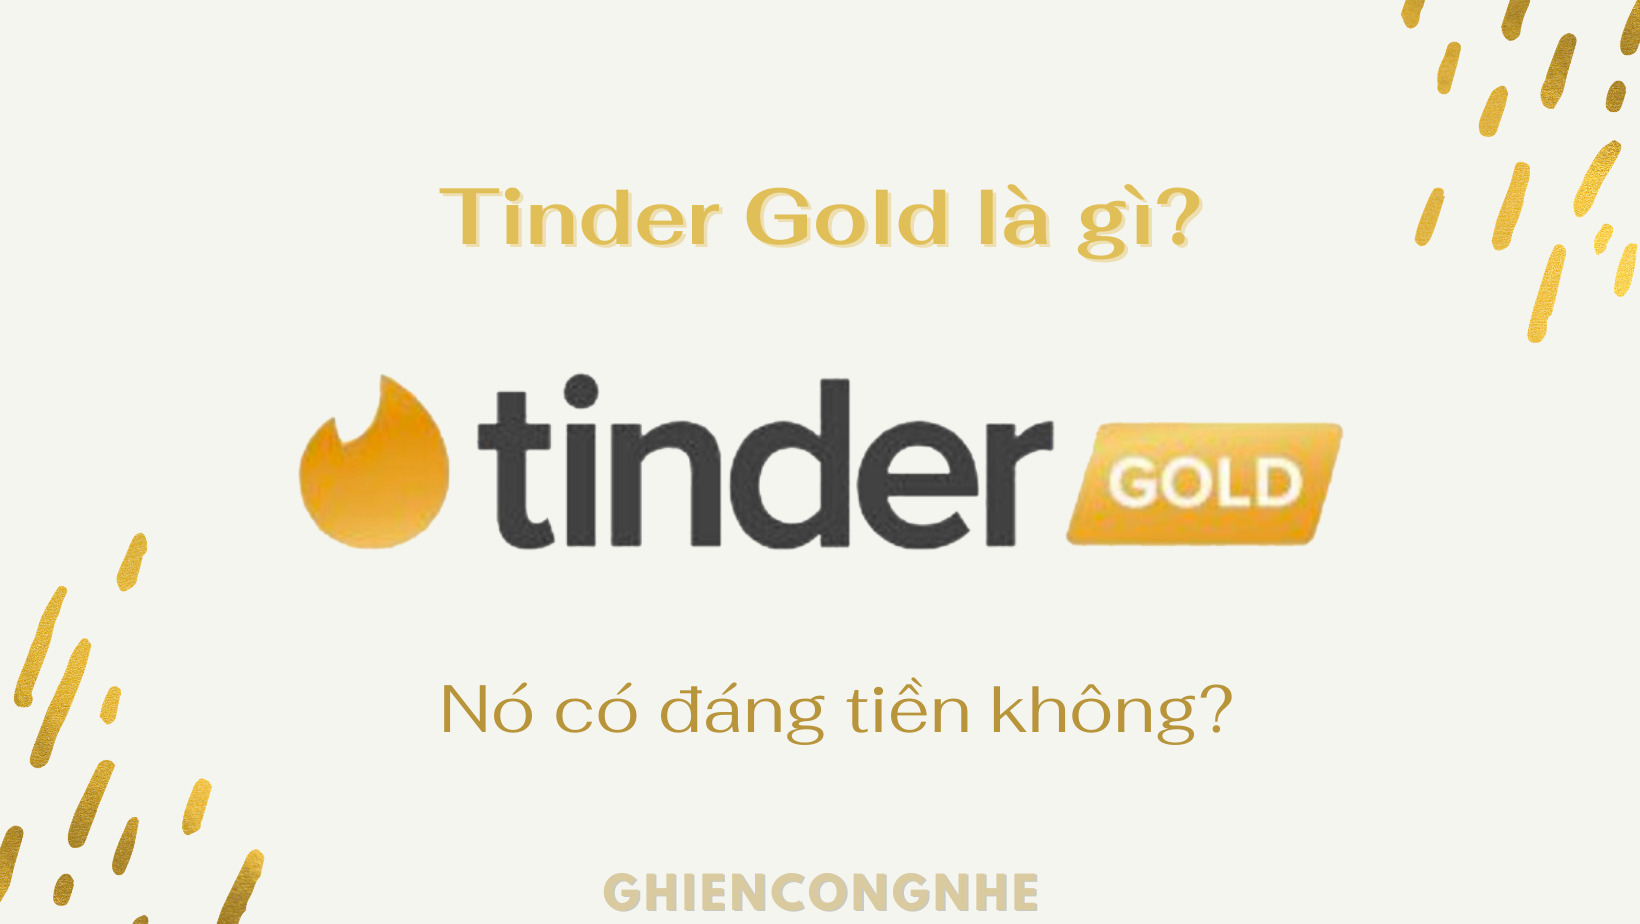 Tinder Gold là gì và nó có đáng đồng tiền bát gạo không?